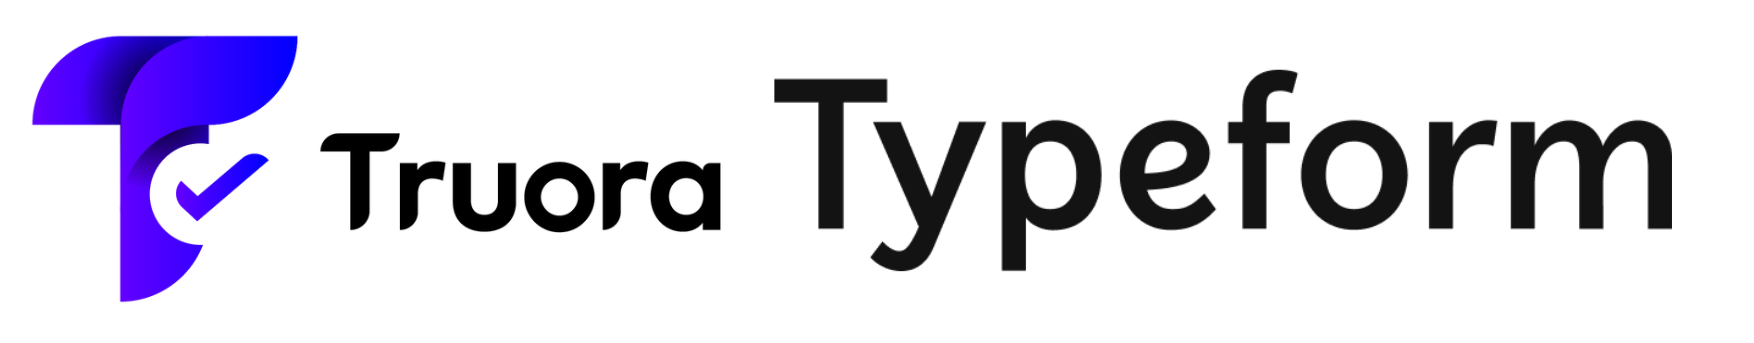 Truora and Typeform